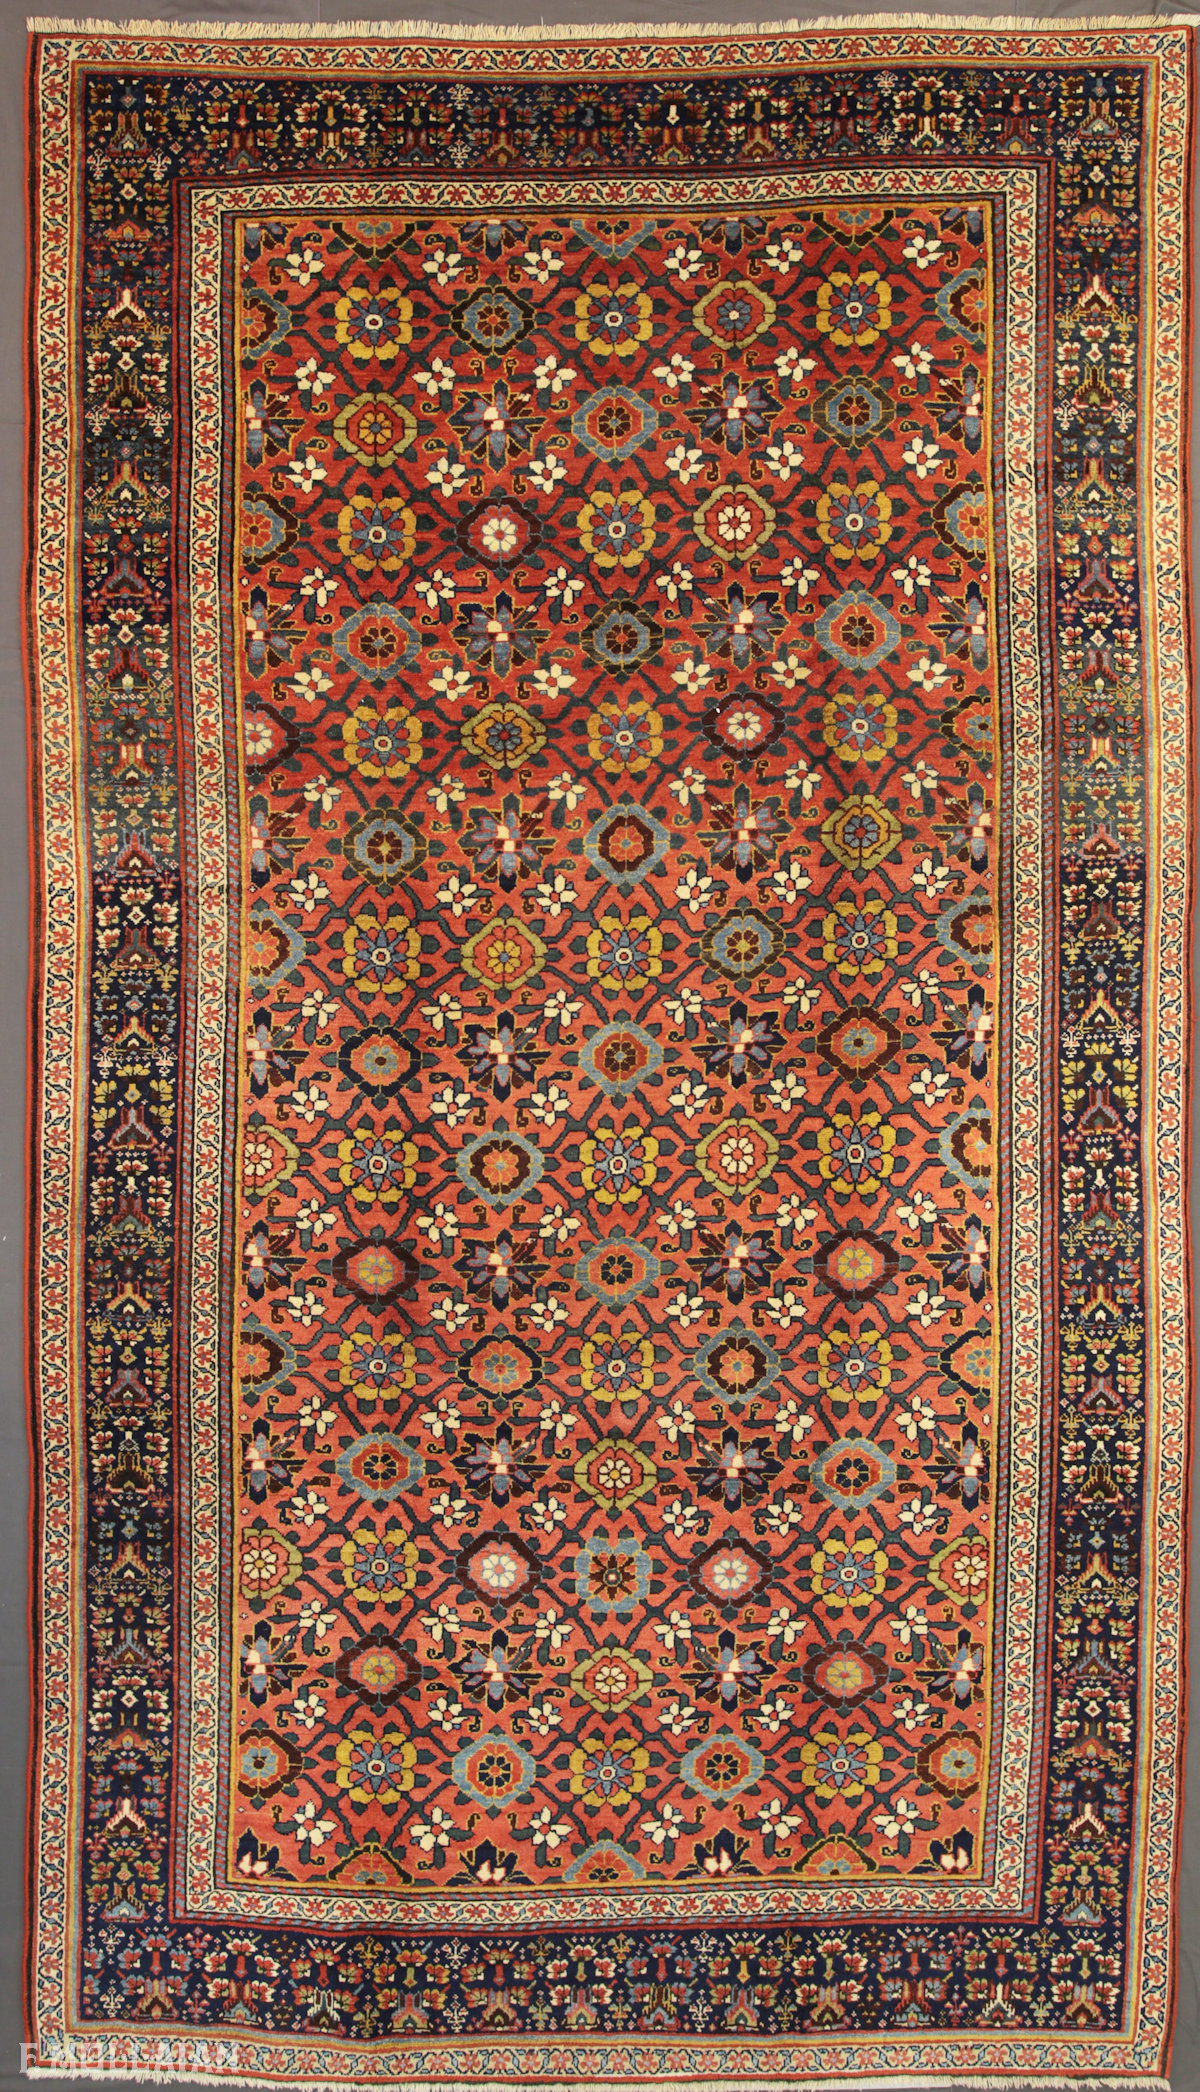 Antique Persian Bijar (Bidjar) Gallery Carpet n°:68290174